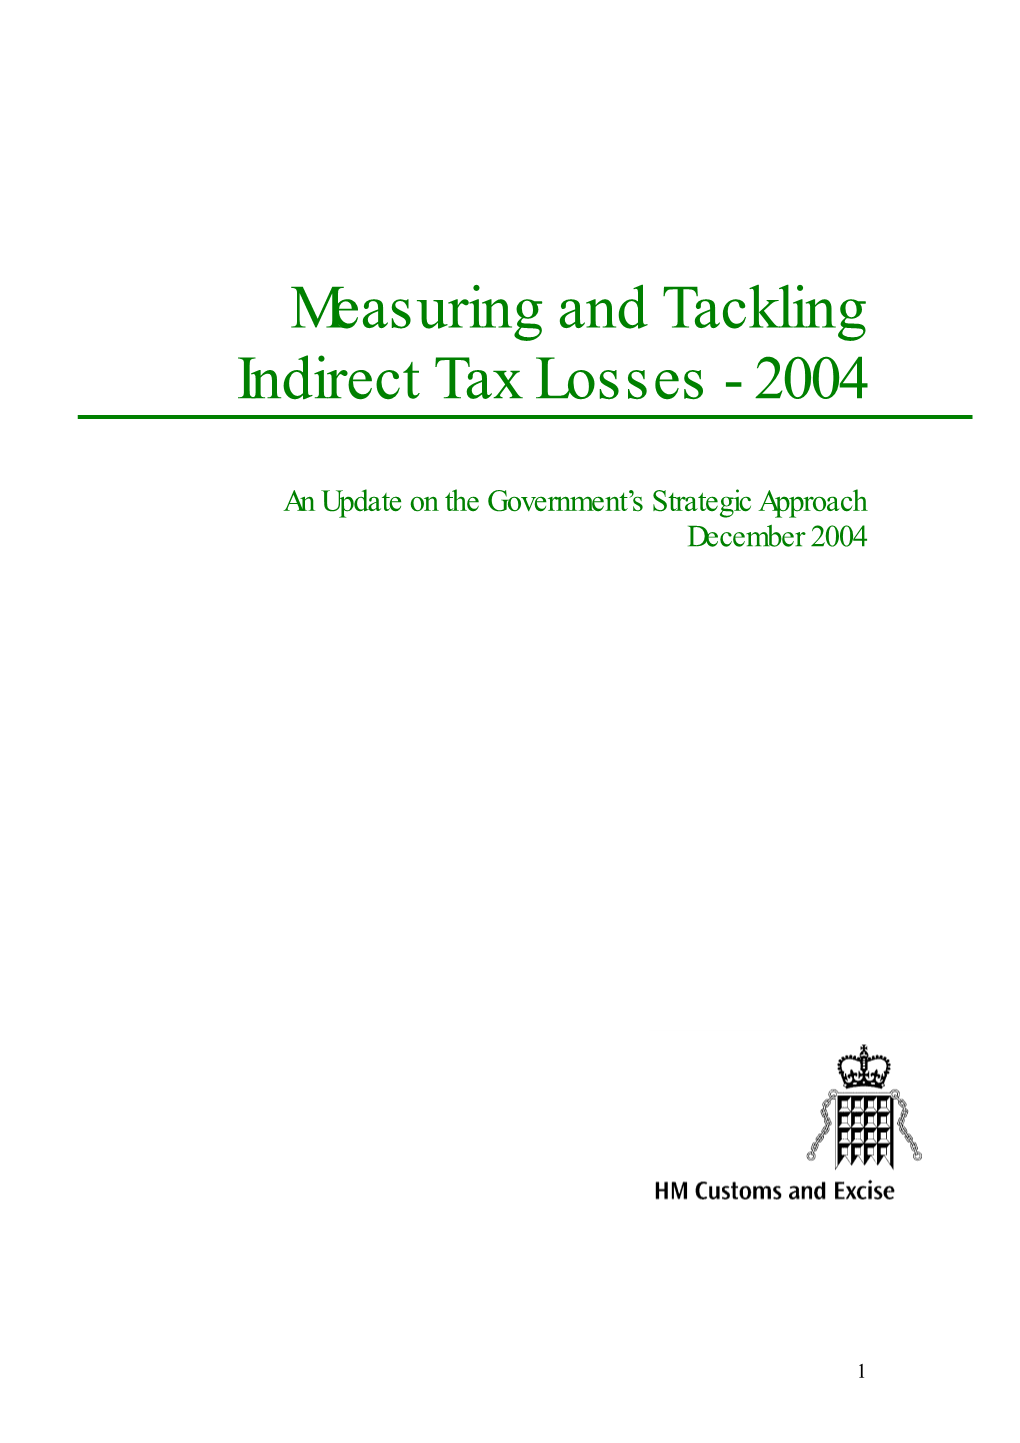 Measuring and Tackling Indirect Tax Losses - 2004